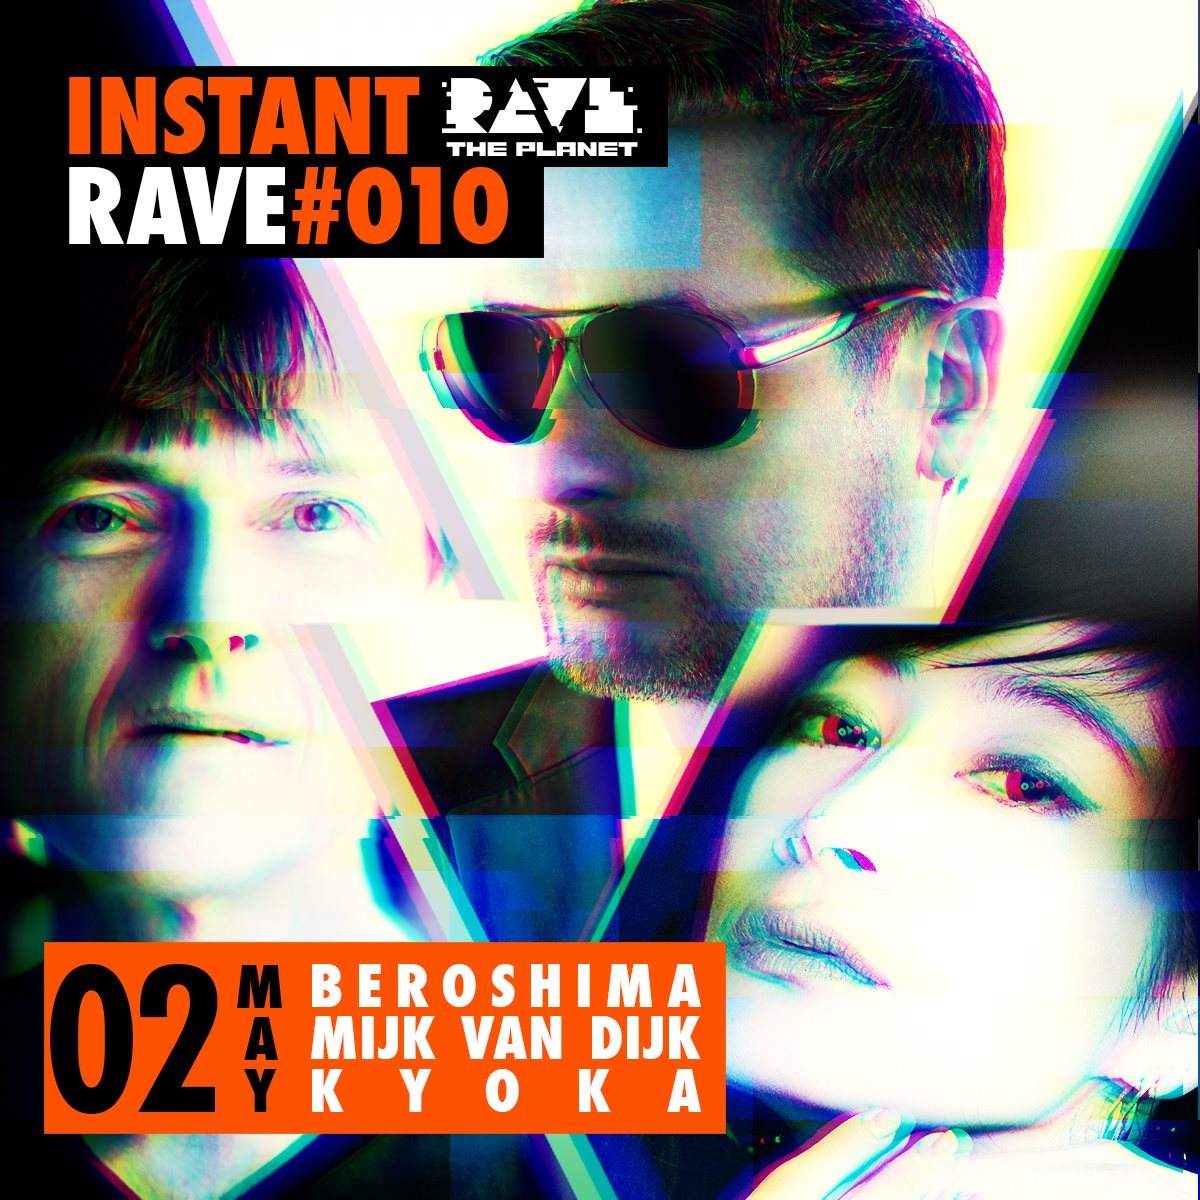 日本版 Instant Rave #010 Japan Special - Página trasera